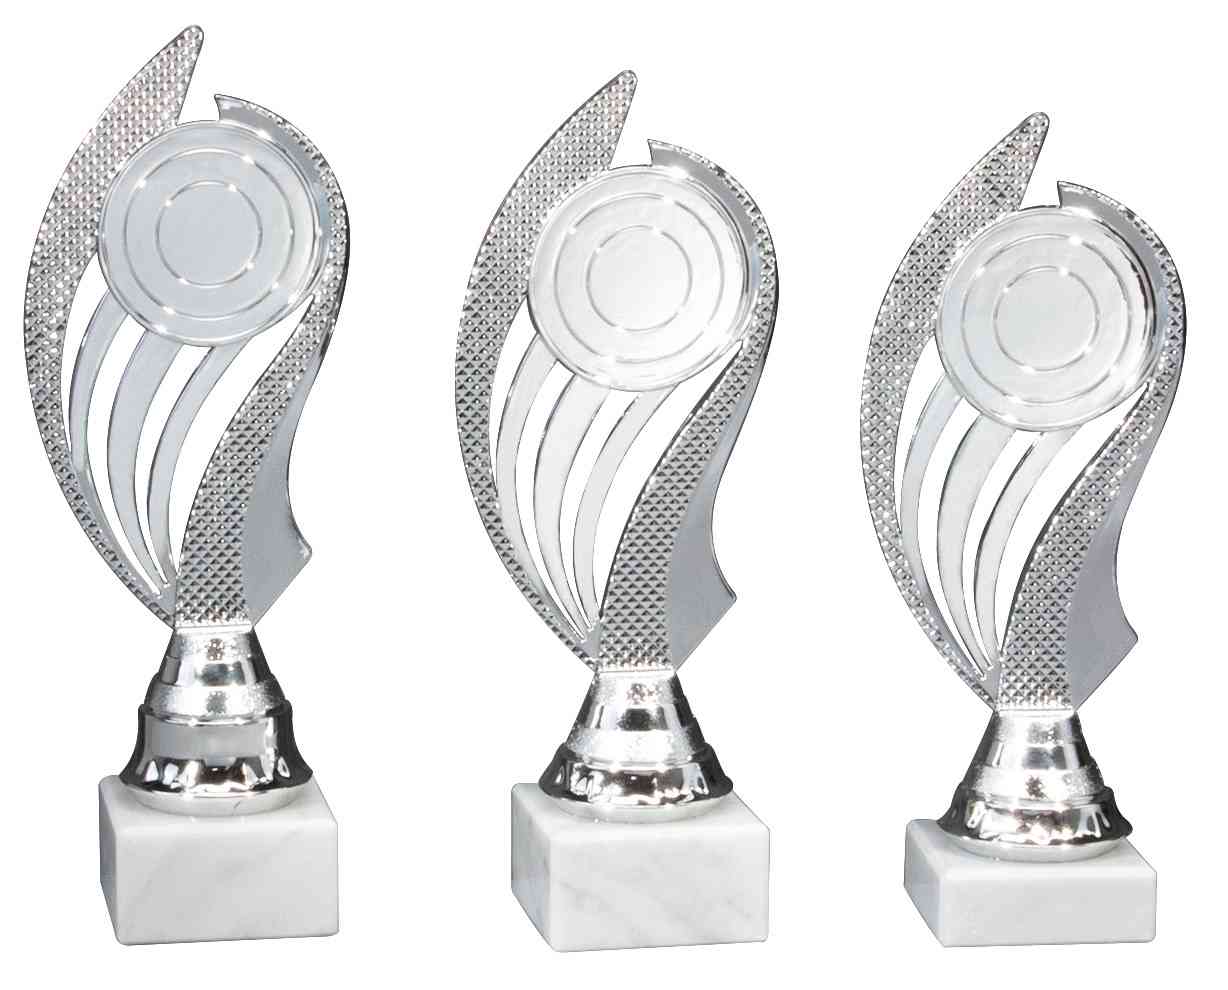 Drei Pokale Passau 3er Pokalserie 200 mm - 220 mm PK740460-3-E50 mit abstrakten Flügeldesigns und kreisrunden Zentren auf quadratischen Sockeln, isoliert auf weißem H.